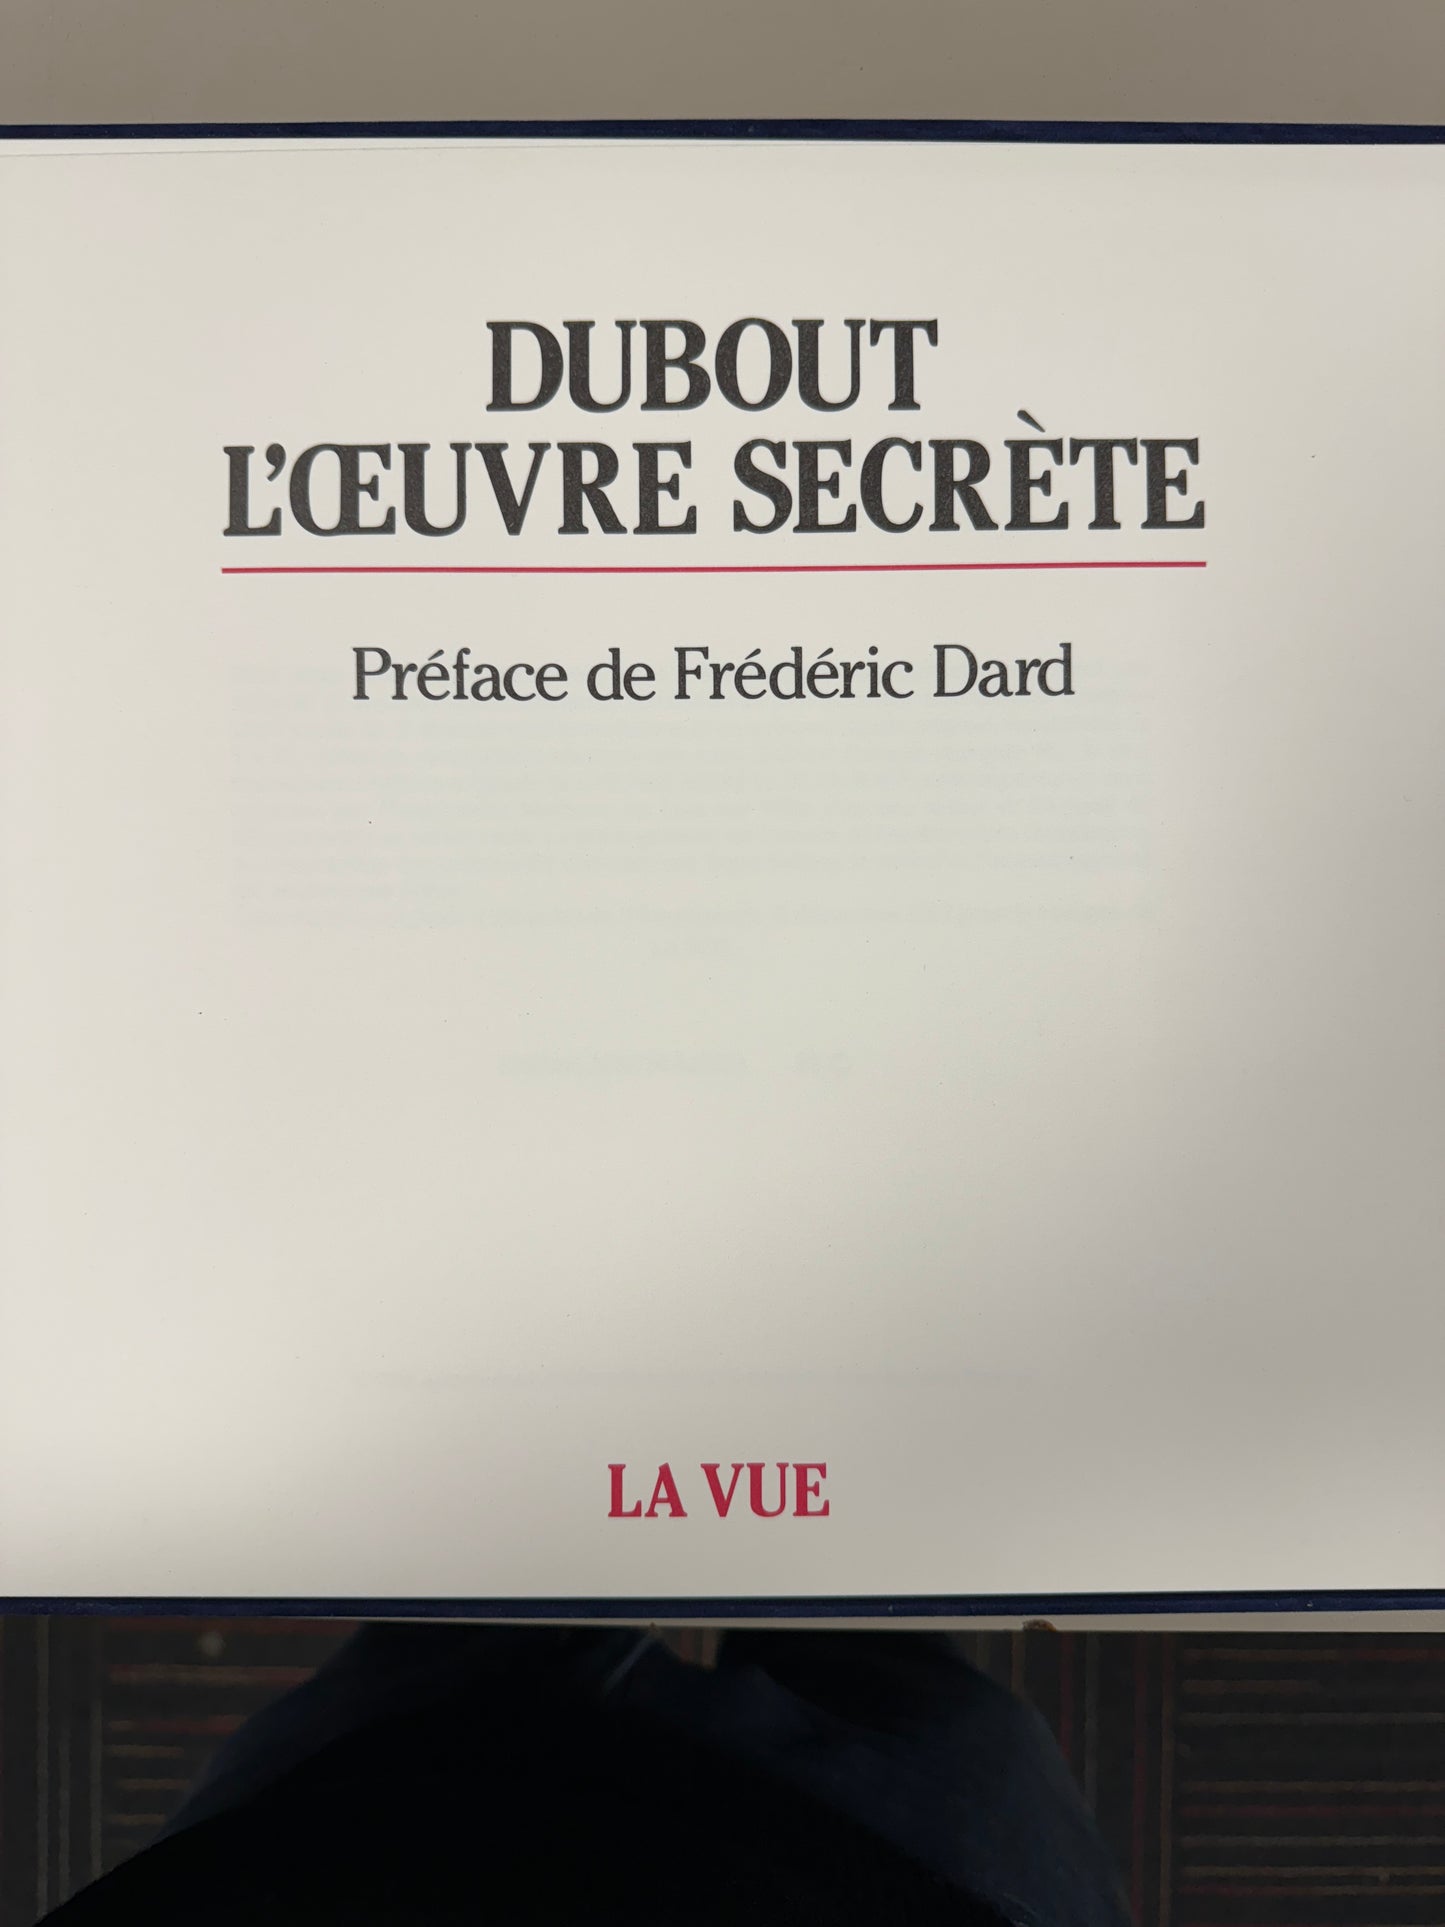 Albert DUBOUT
L’Œuvre Secrète 
Frederic DARD - Jean Jacques PAUVERT
Édition La Vue, Paris 1982.